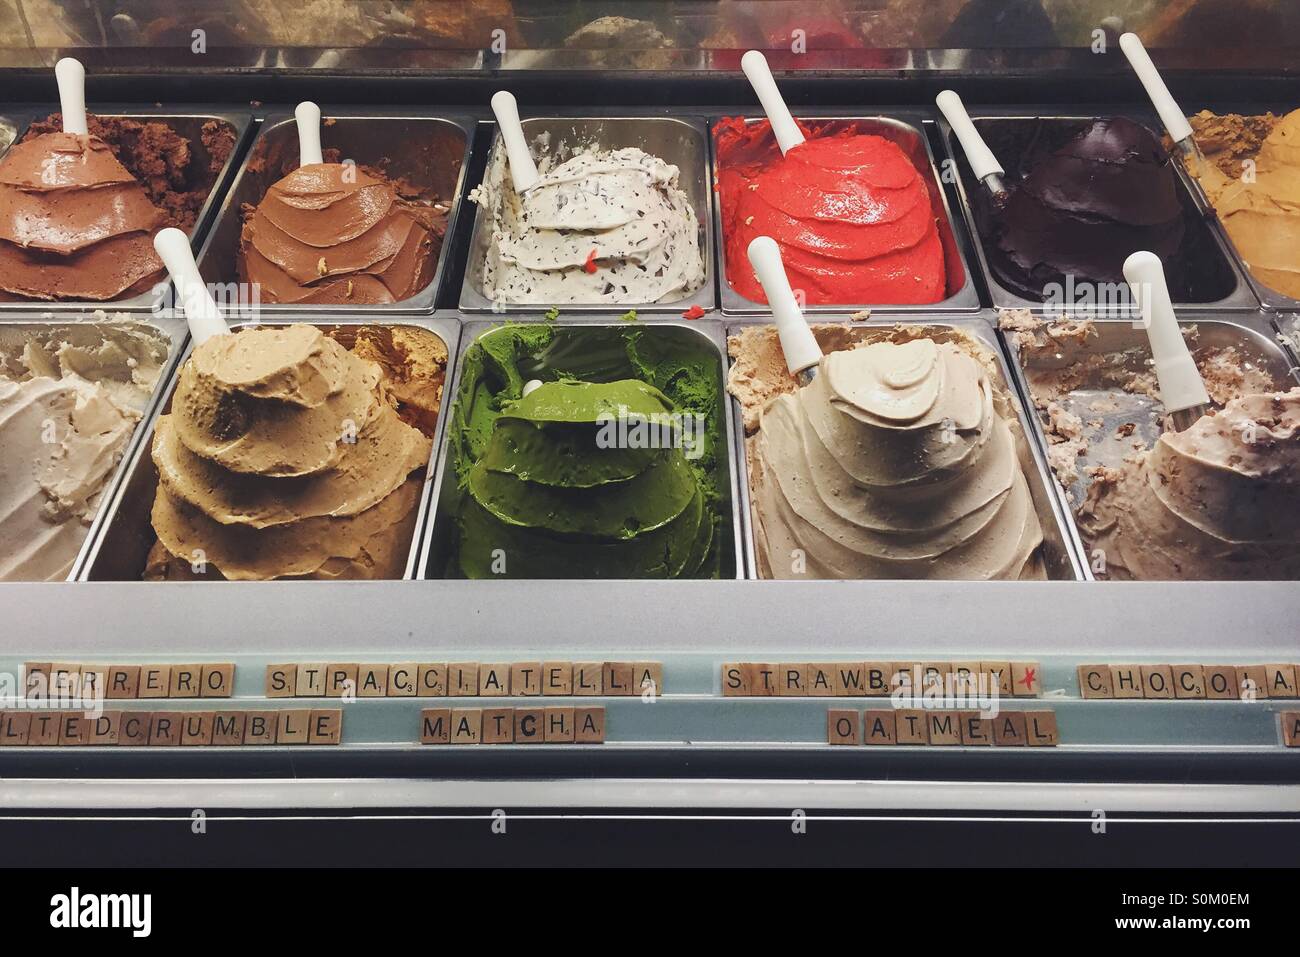 yum gelato Stock Photo